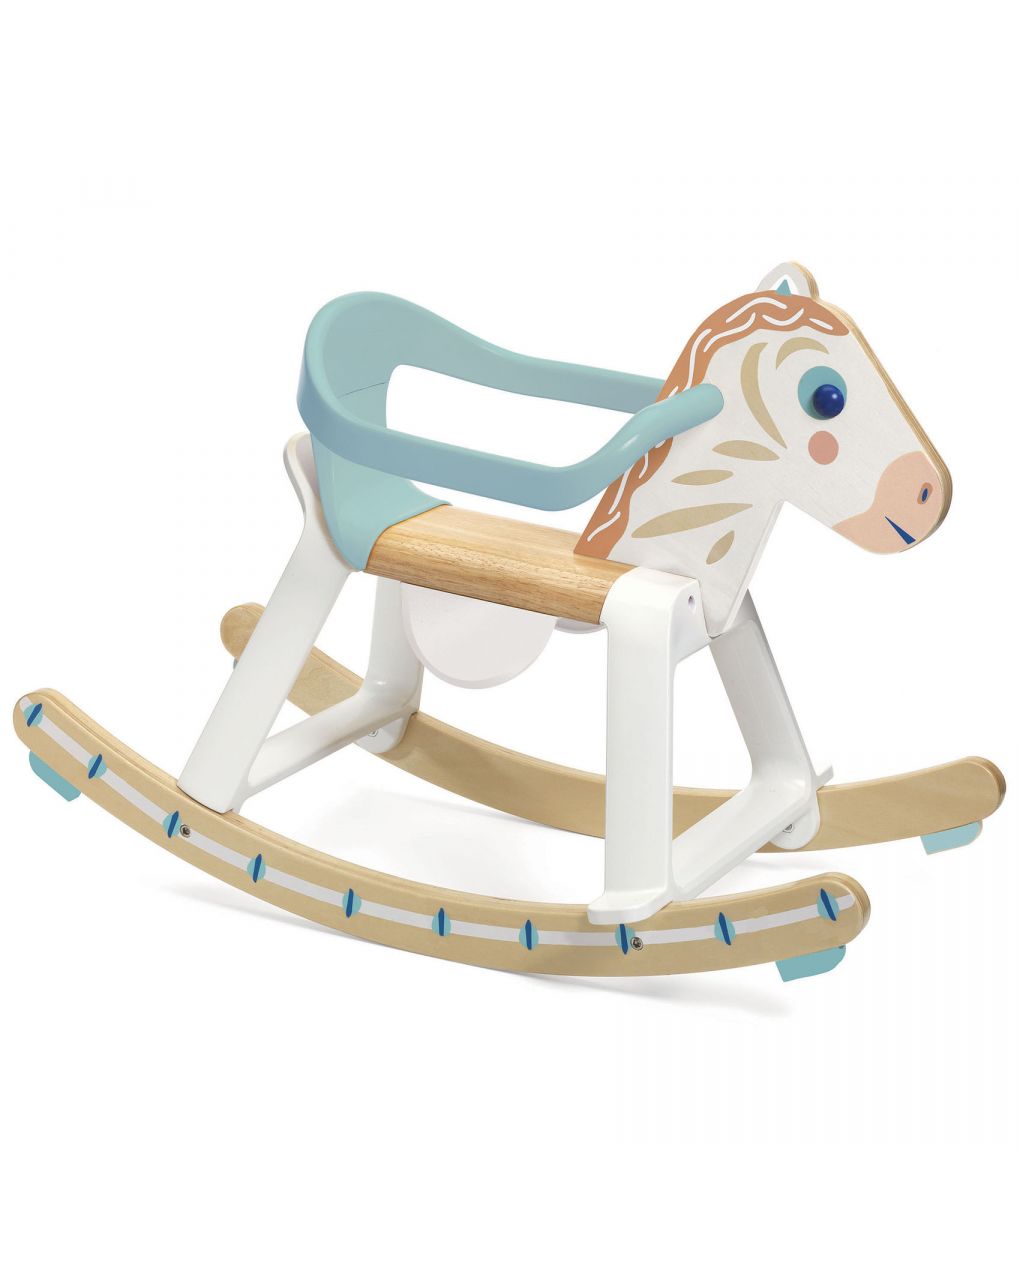 Cavallo a dondolo babycavali in legno e plastica - djeco - Djeco